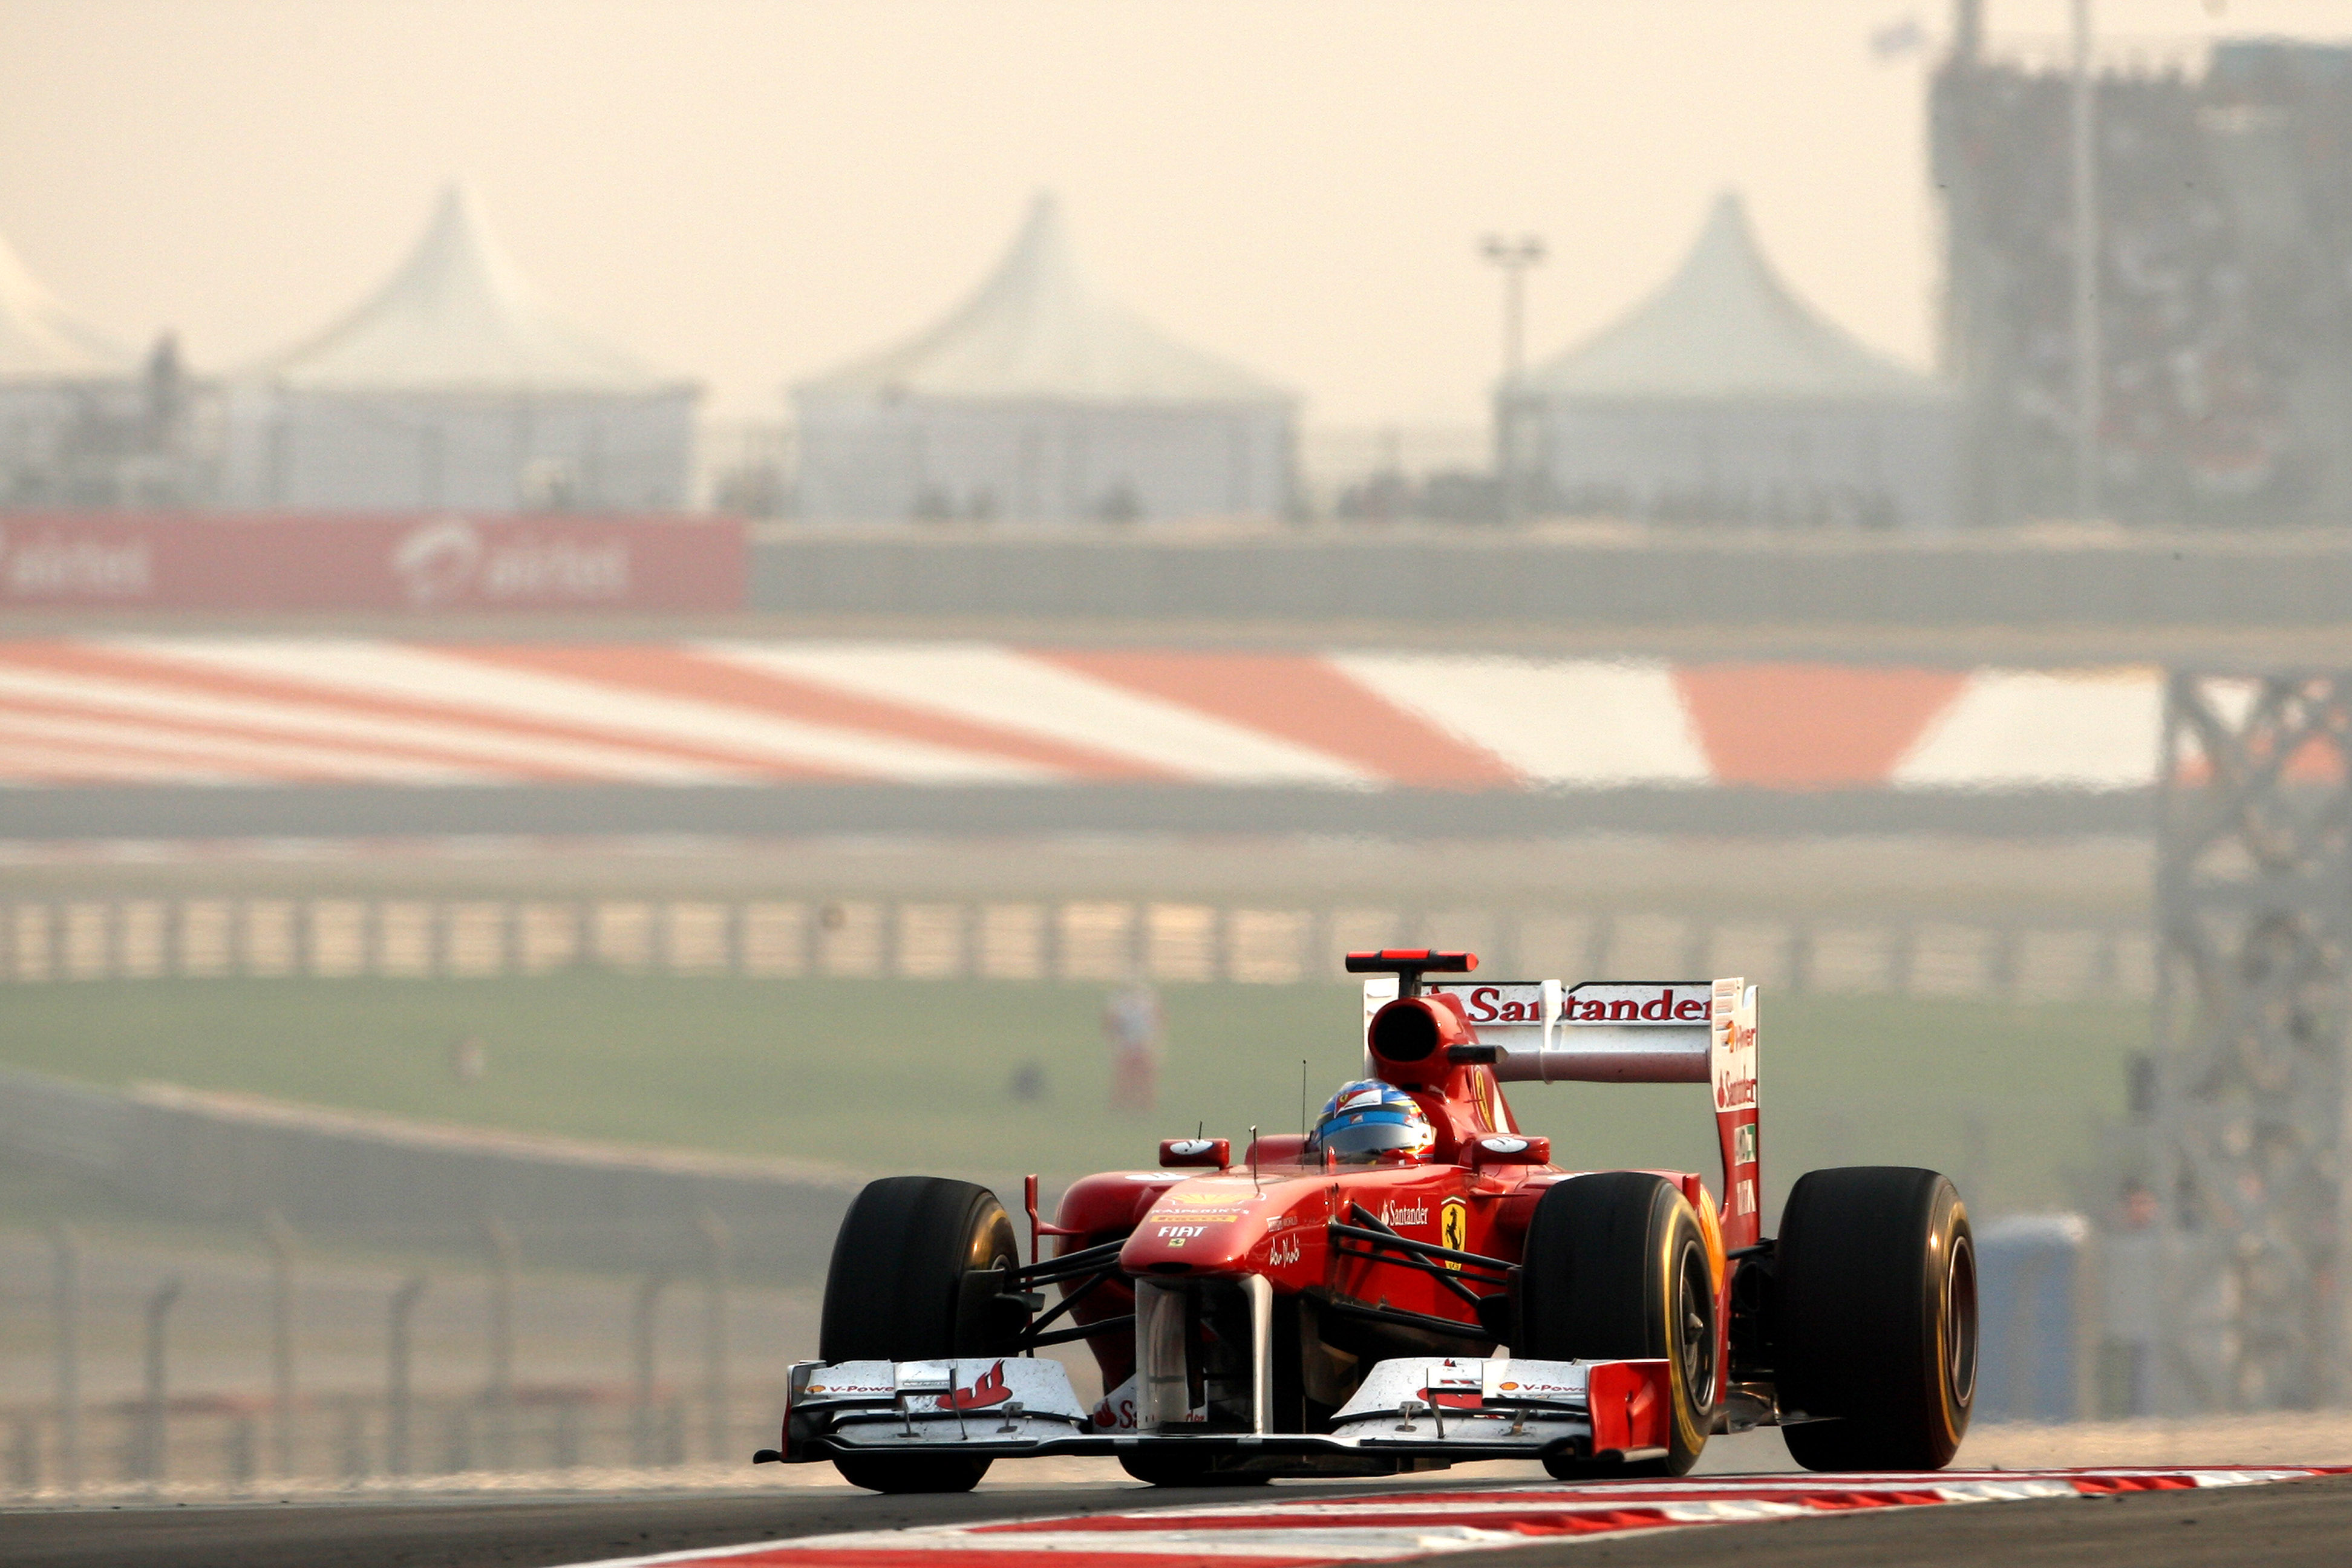 Fernando Alonso Ferrari Indian Grand Prix 2011 Buddh